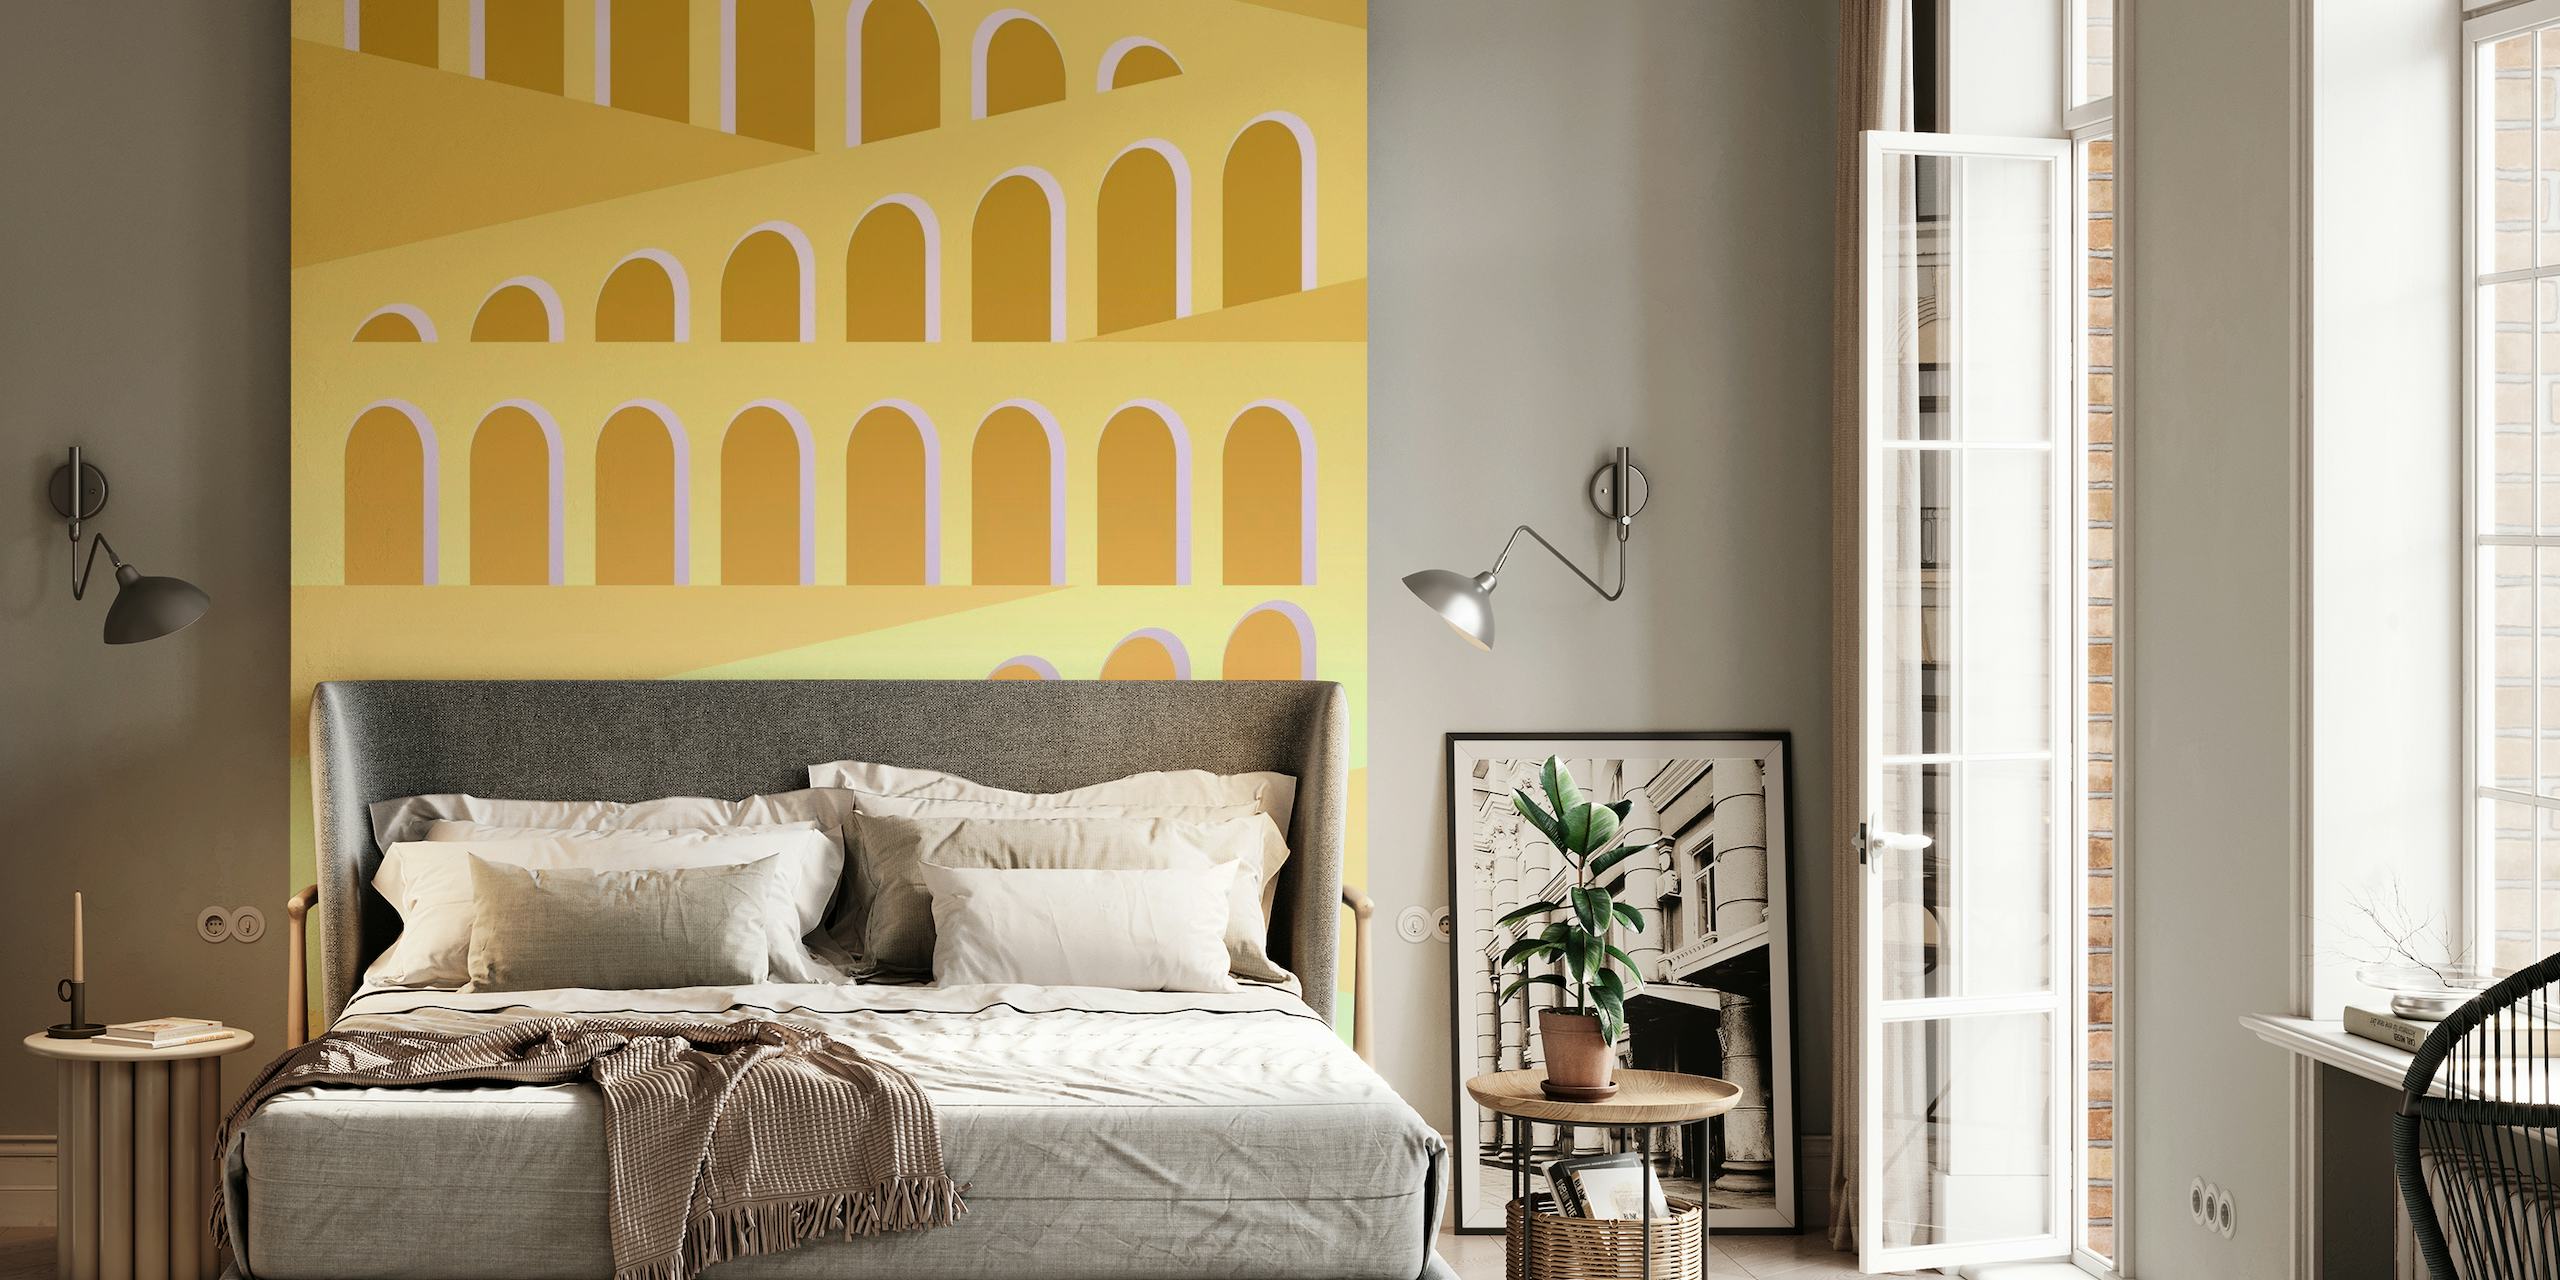 Wandbild „Italian Arches“ mit warmen Erdtönen und mediterranem Architekturdesign